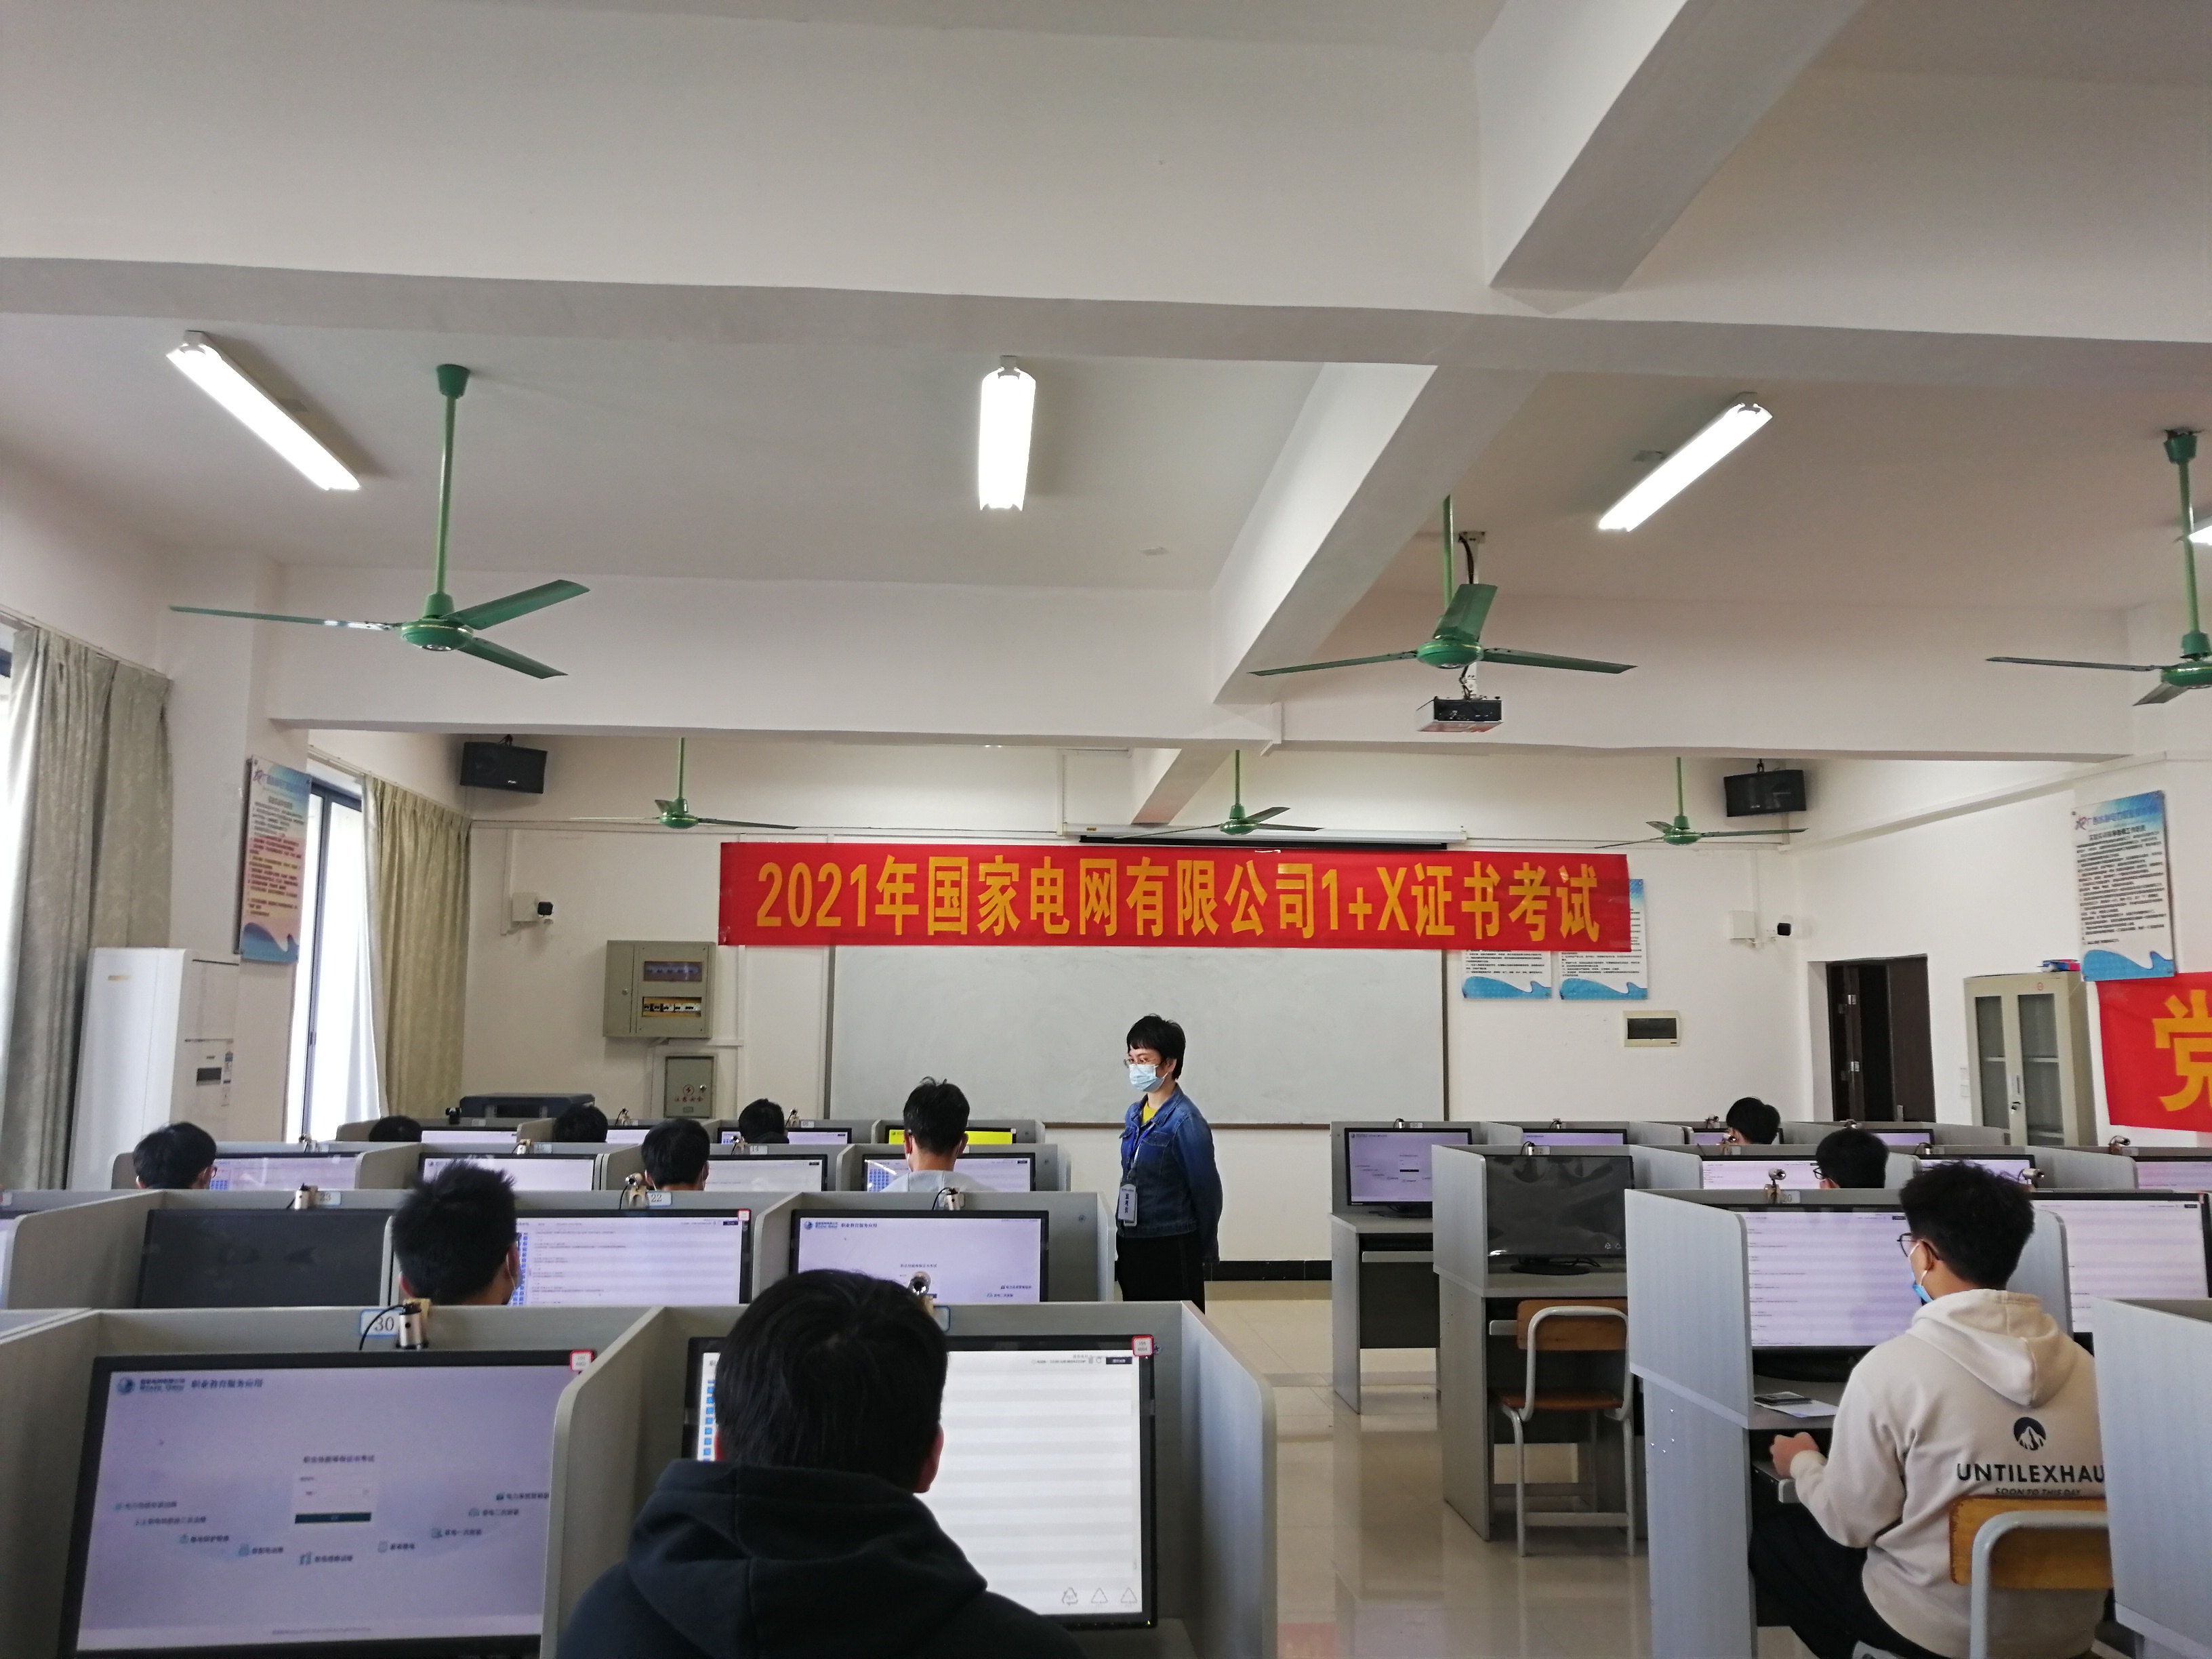 2021年11月13日上午，党员老师颜晓娟在2号考场进行1+X证书理论监考工作。